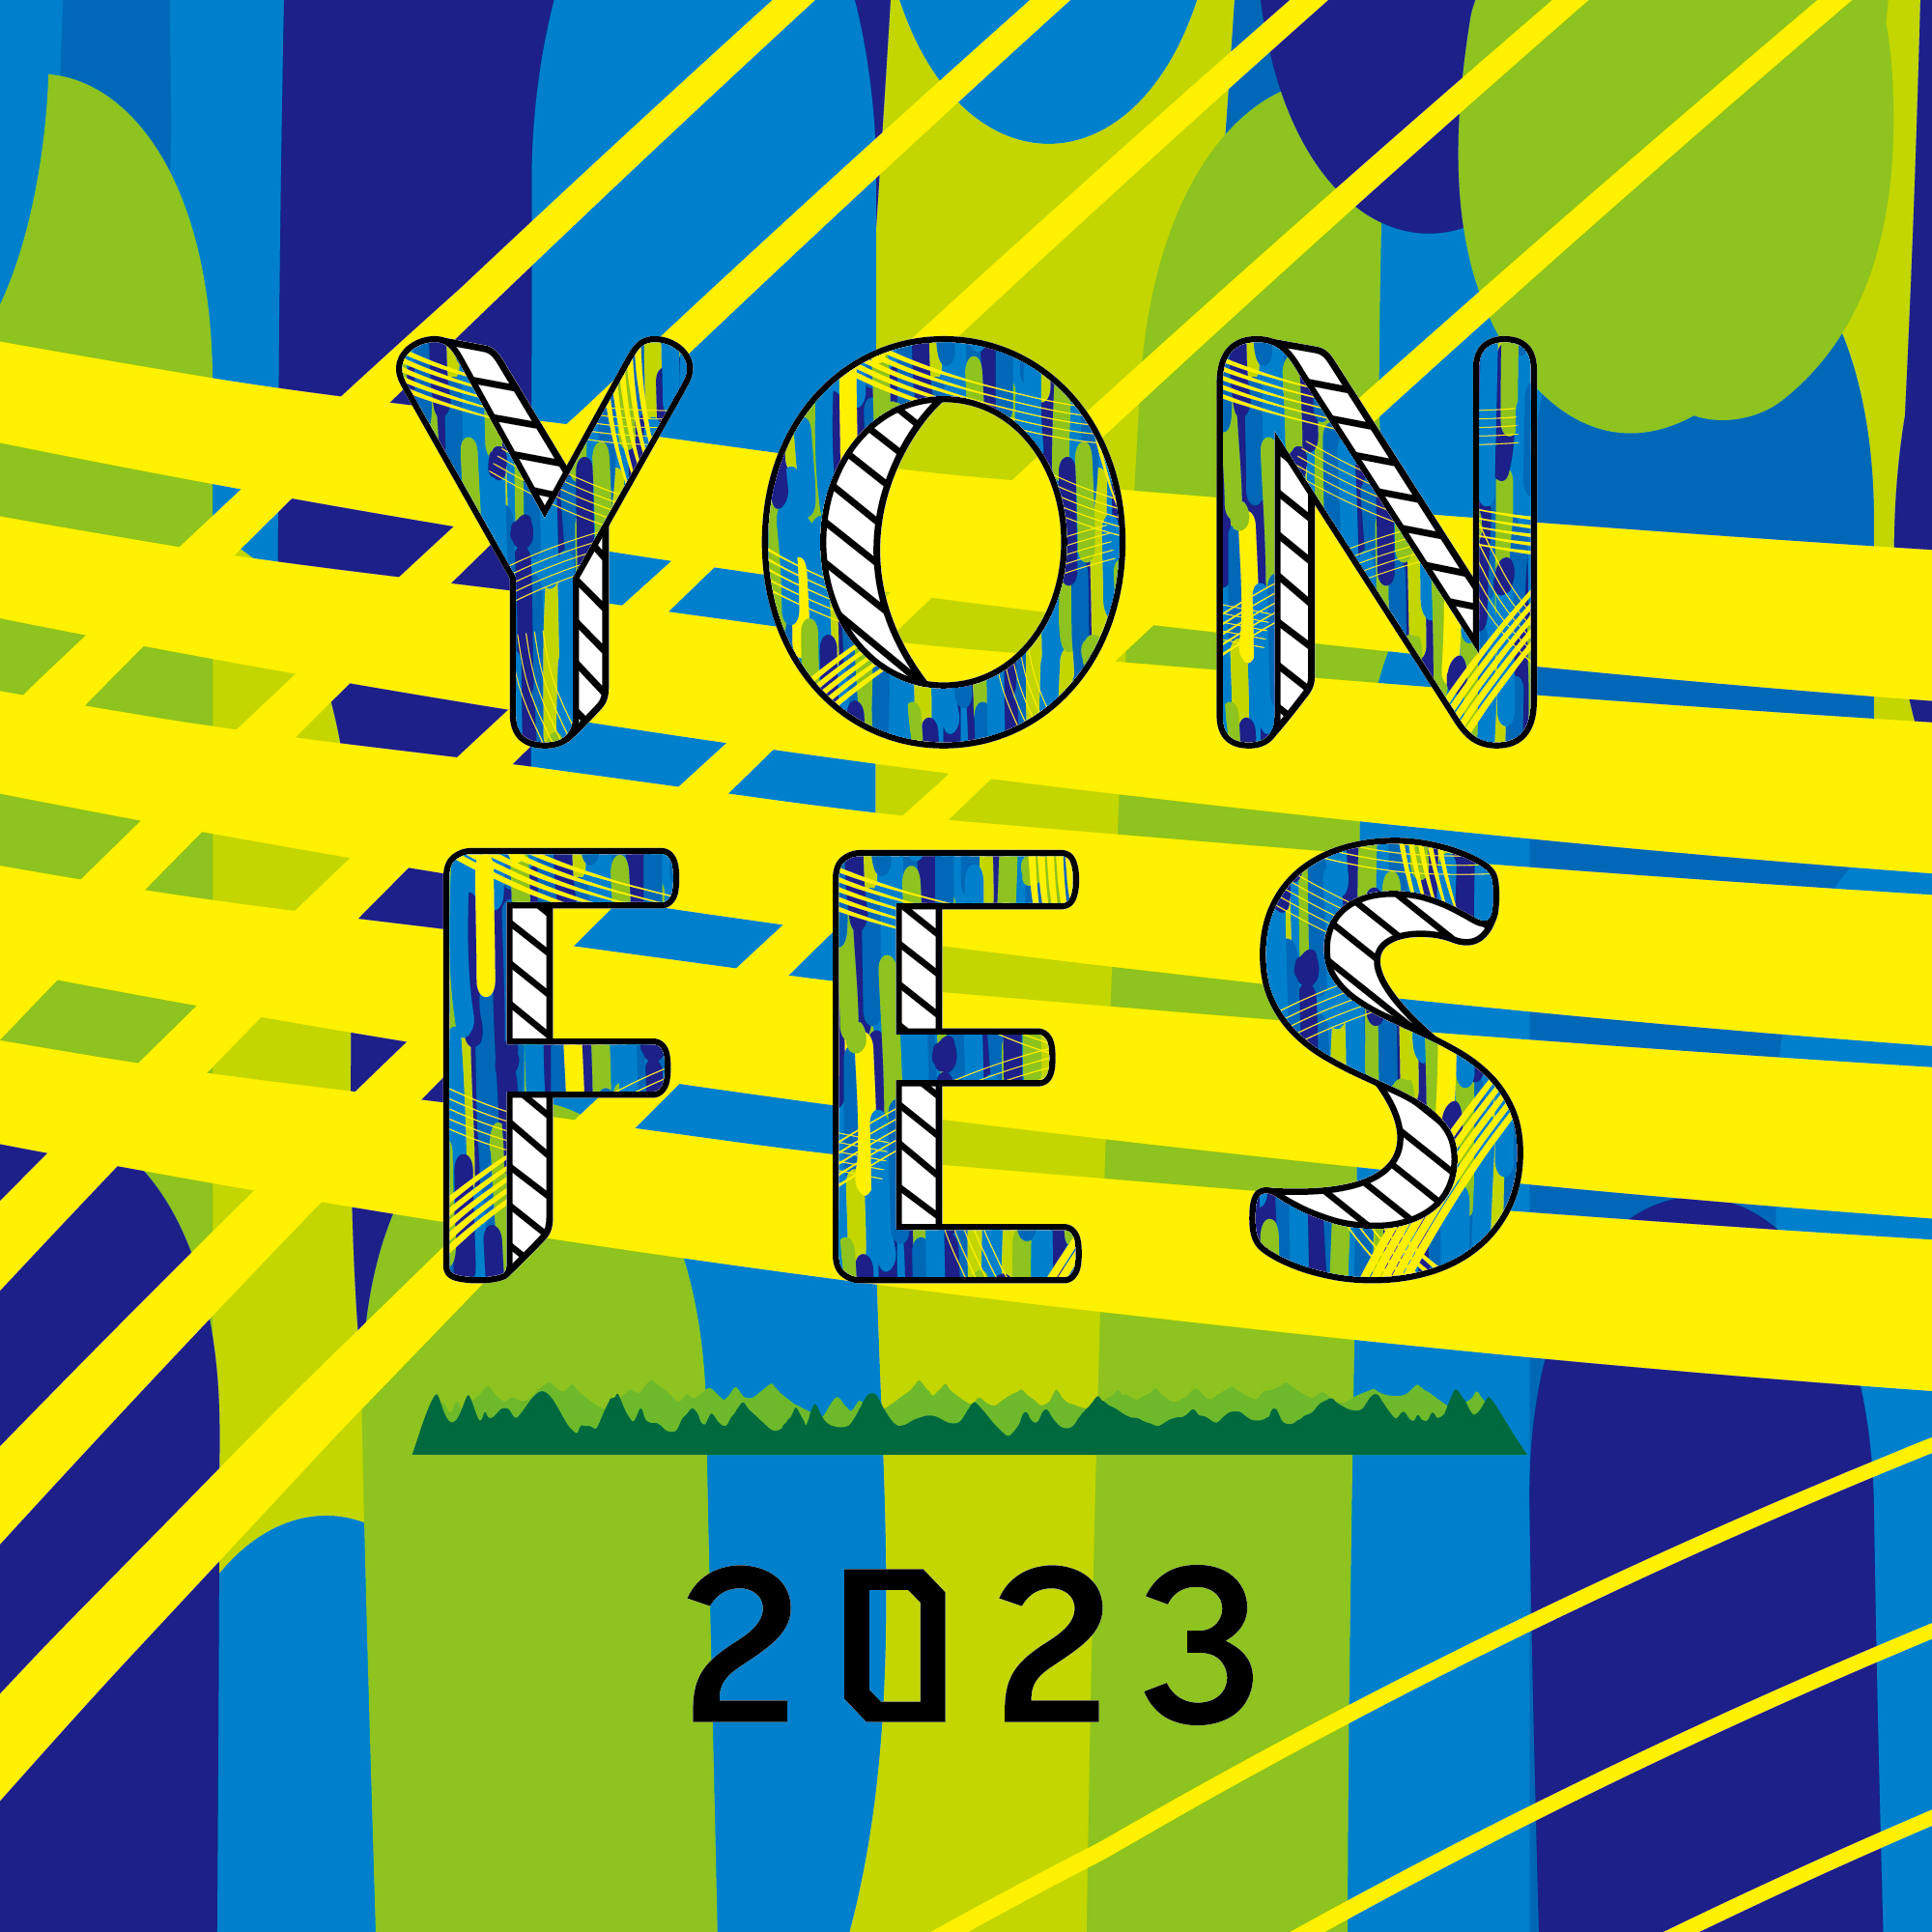 【愛知】YON FES 2023 (モリコロパーク)